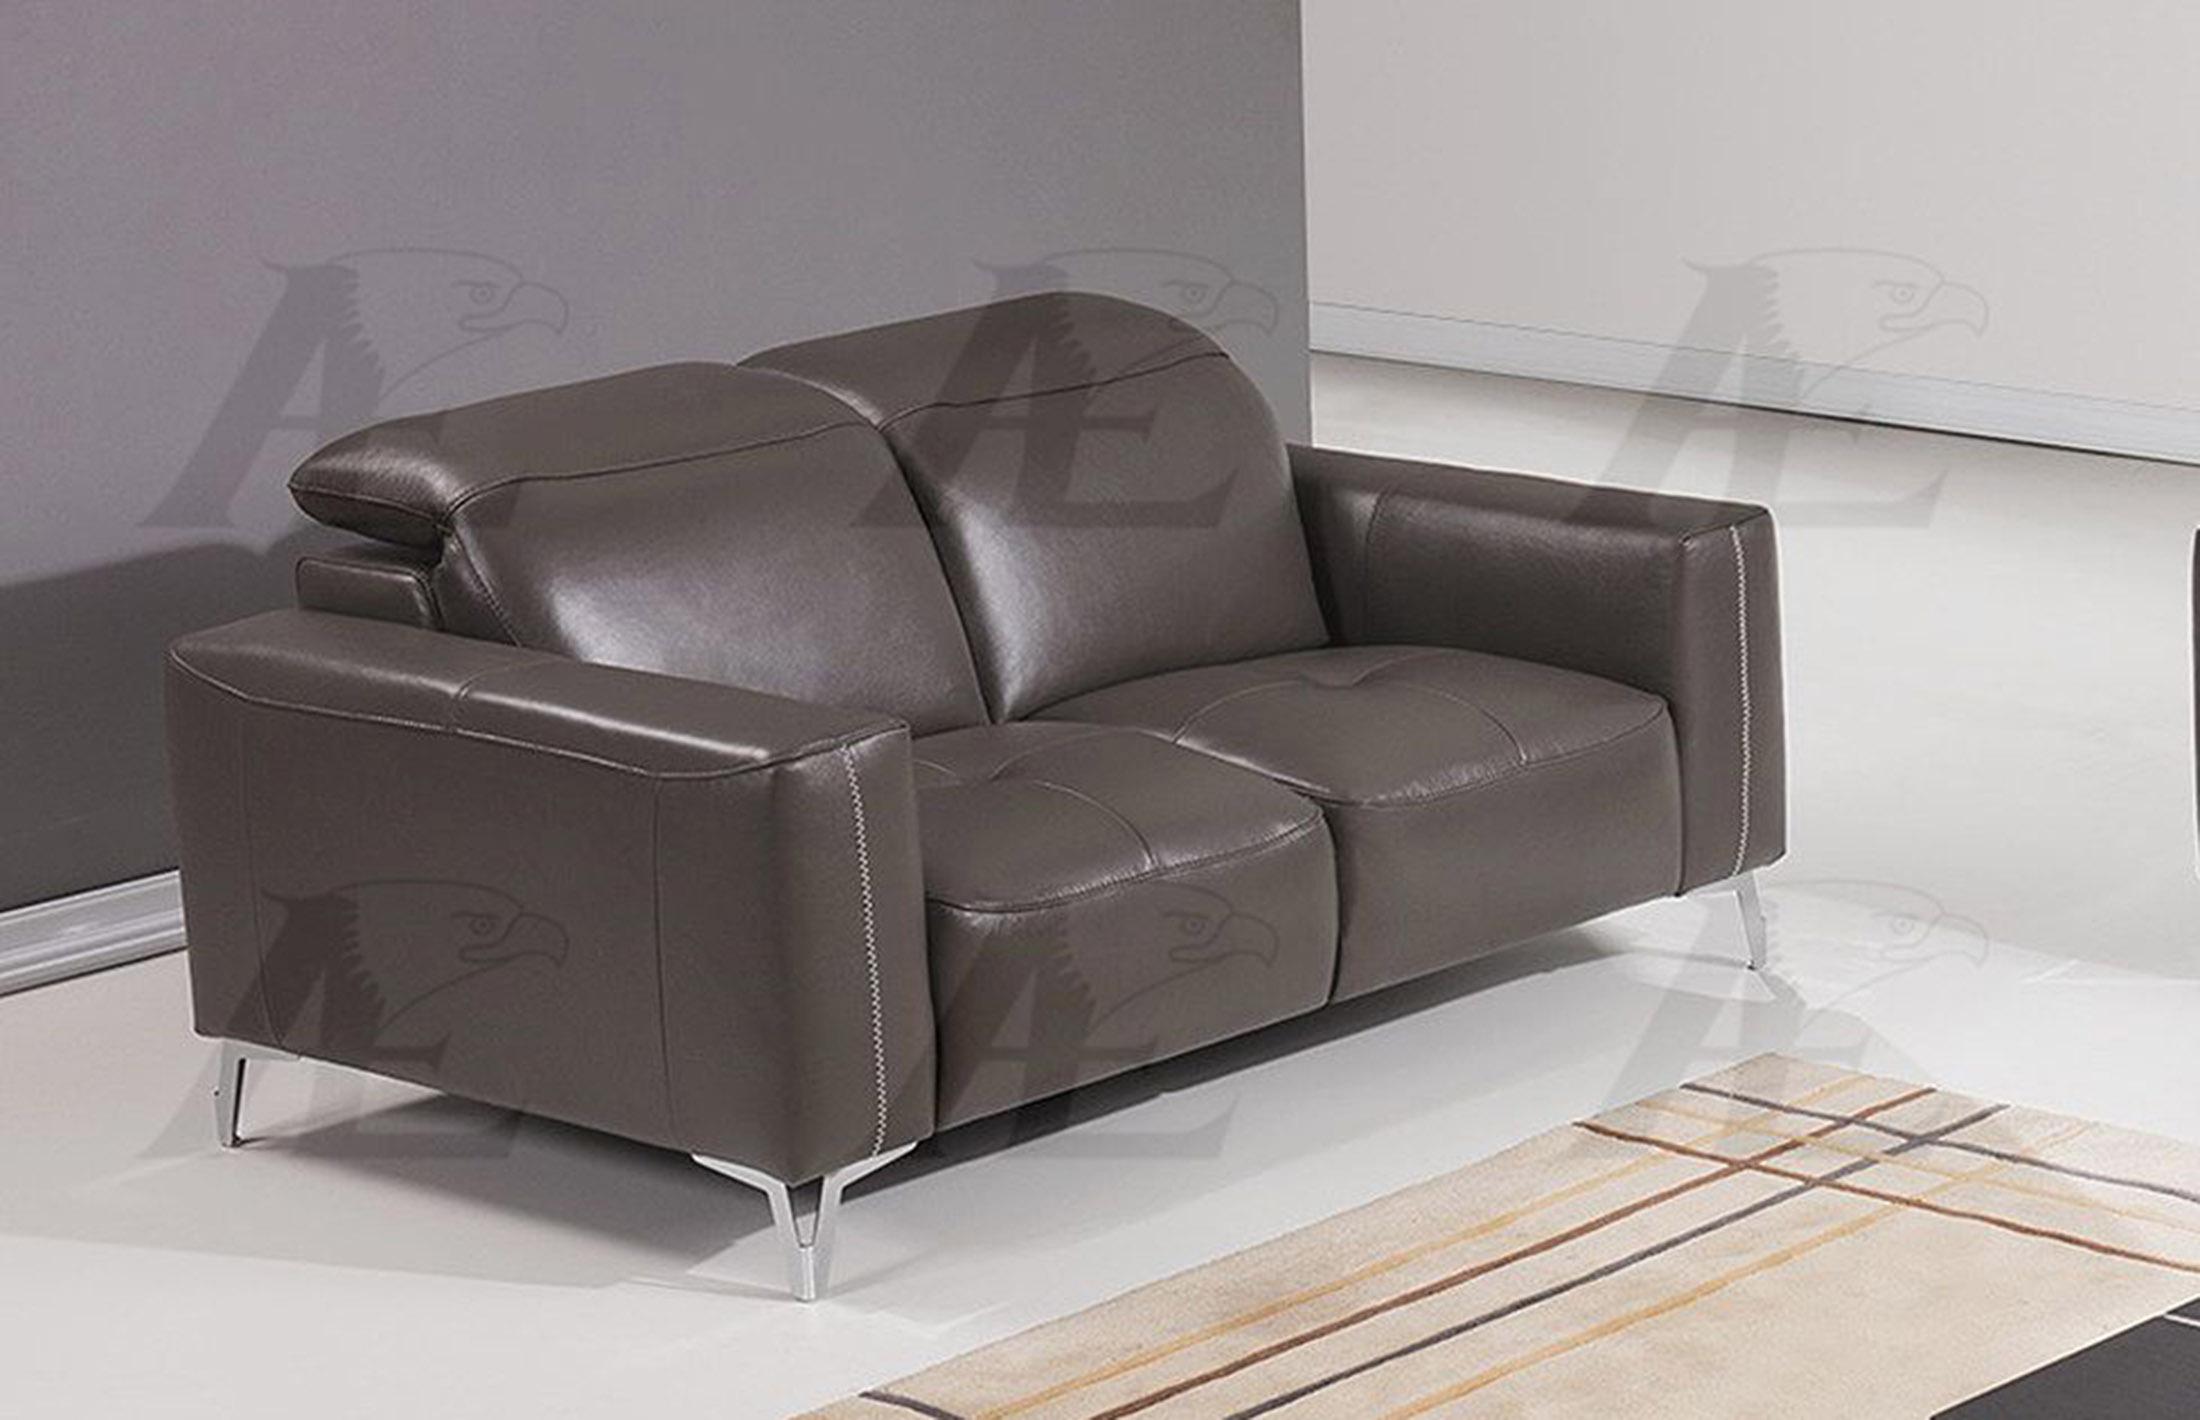 

    
American Eagle Furniture EK069-TPE Taupe Sofa  Italian Full Leather
